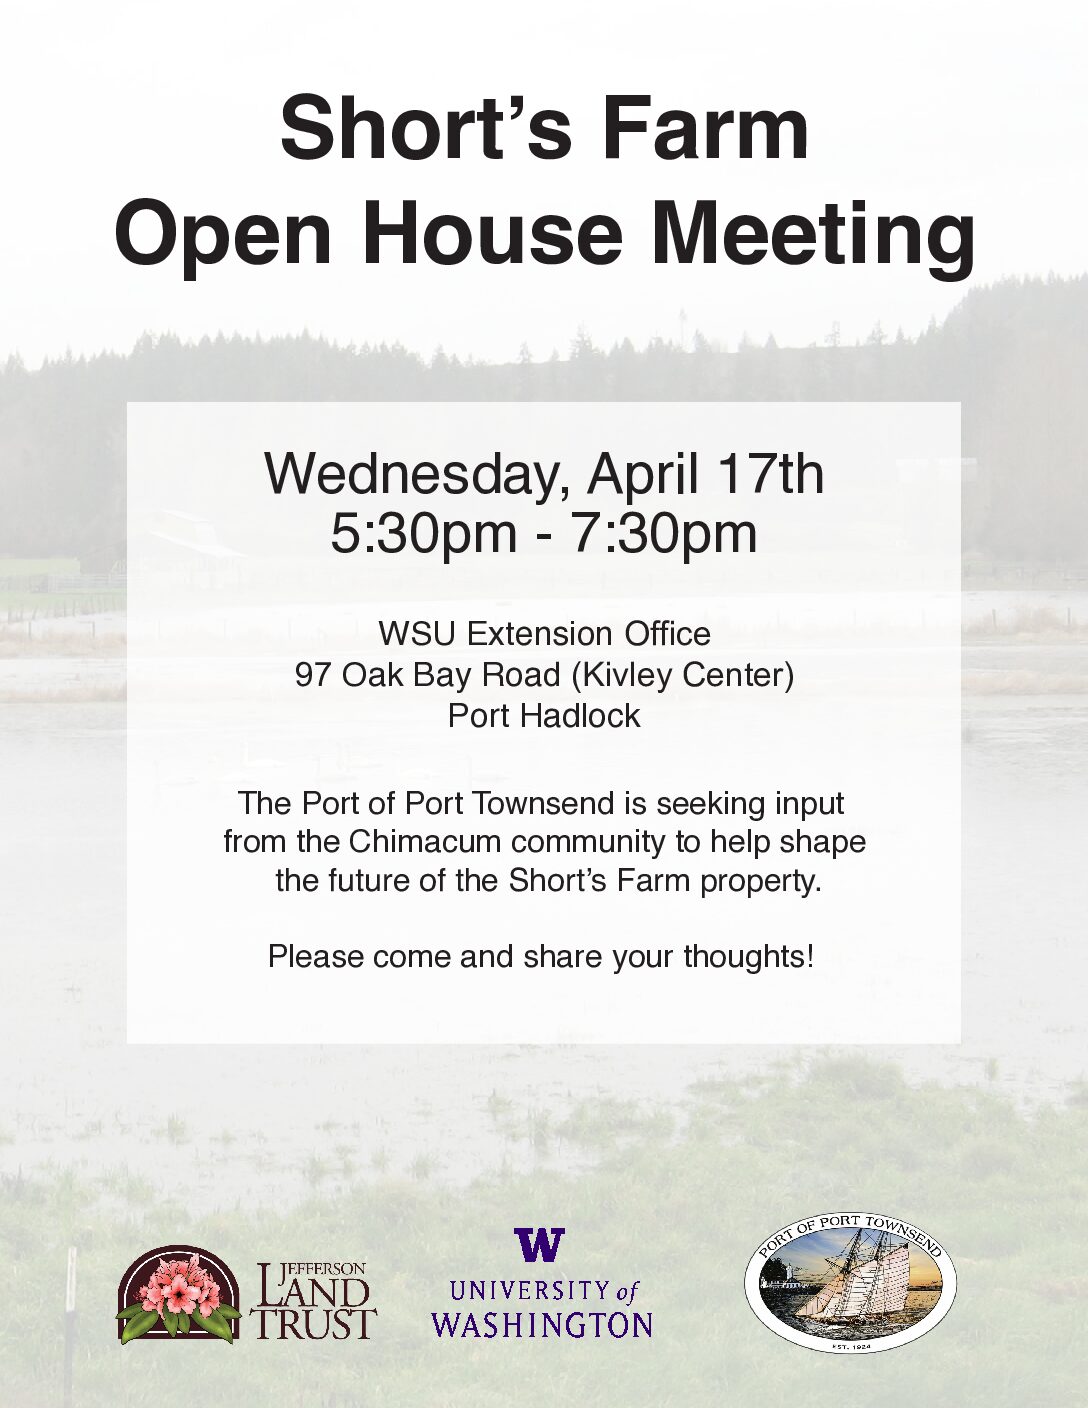 Short’s Farm Open House Meeting April 17